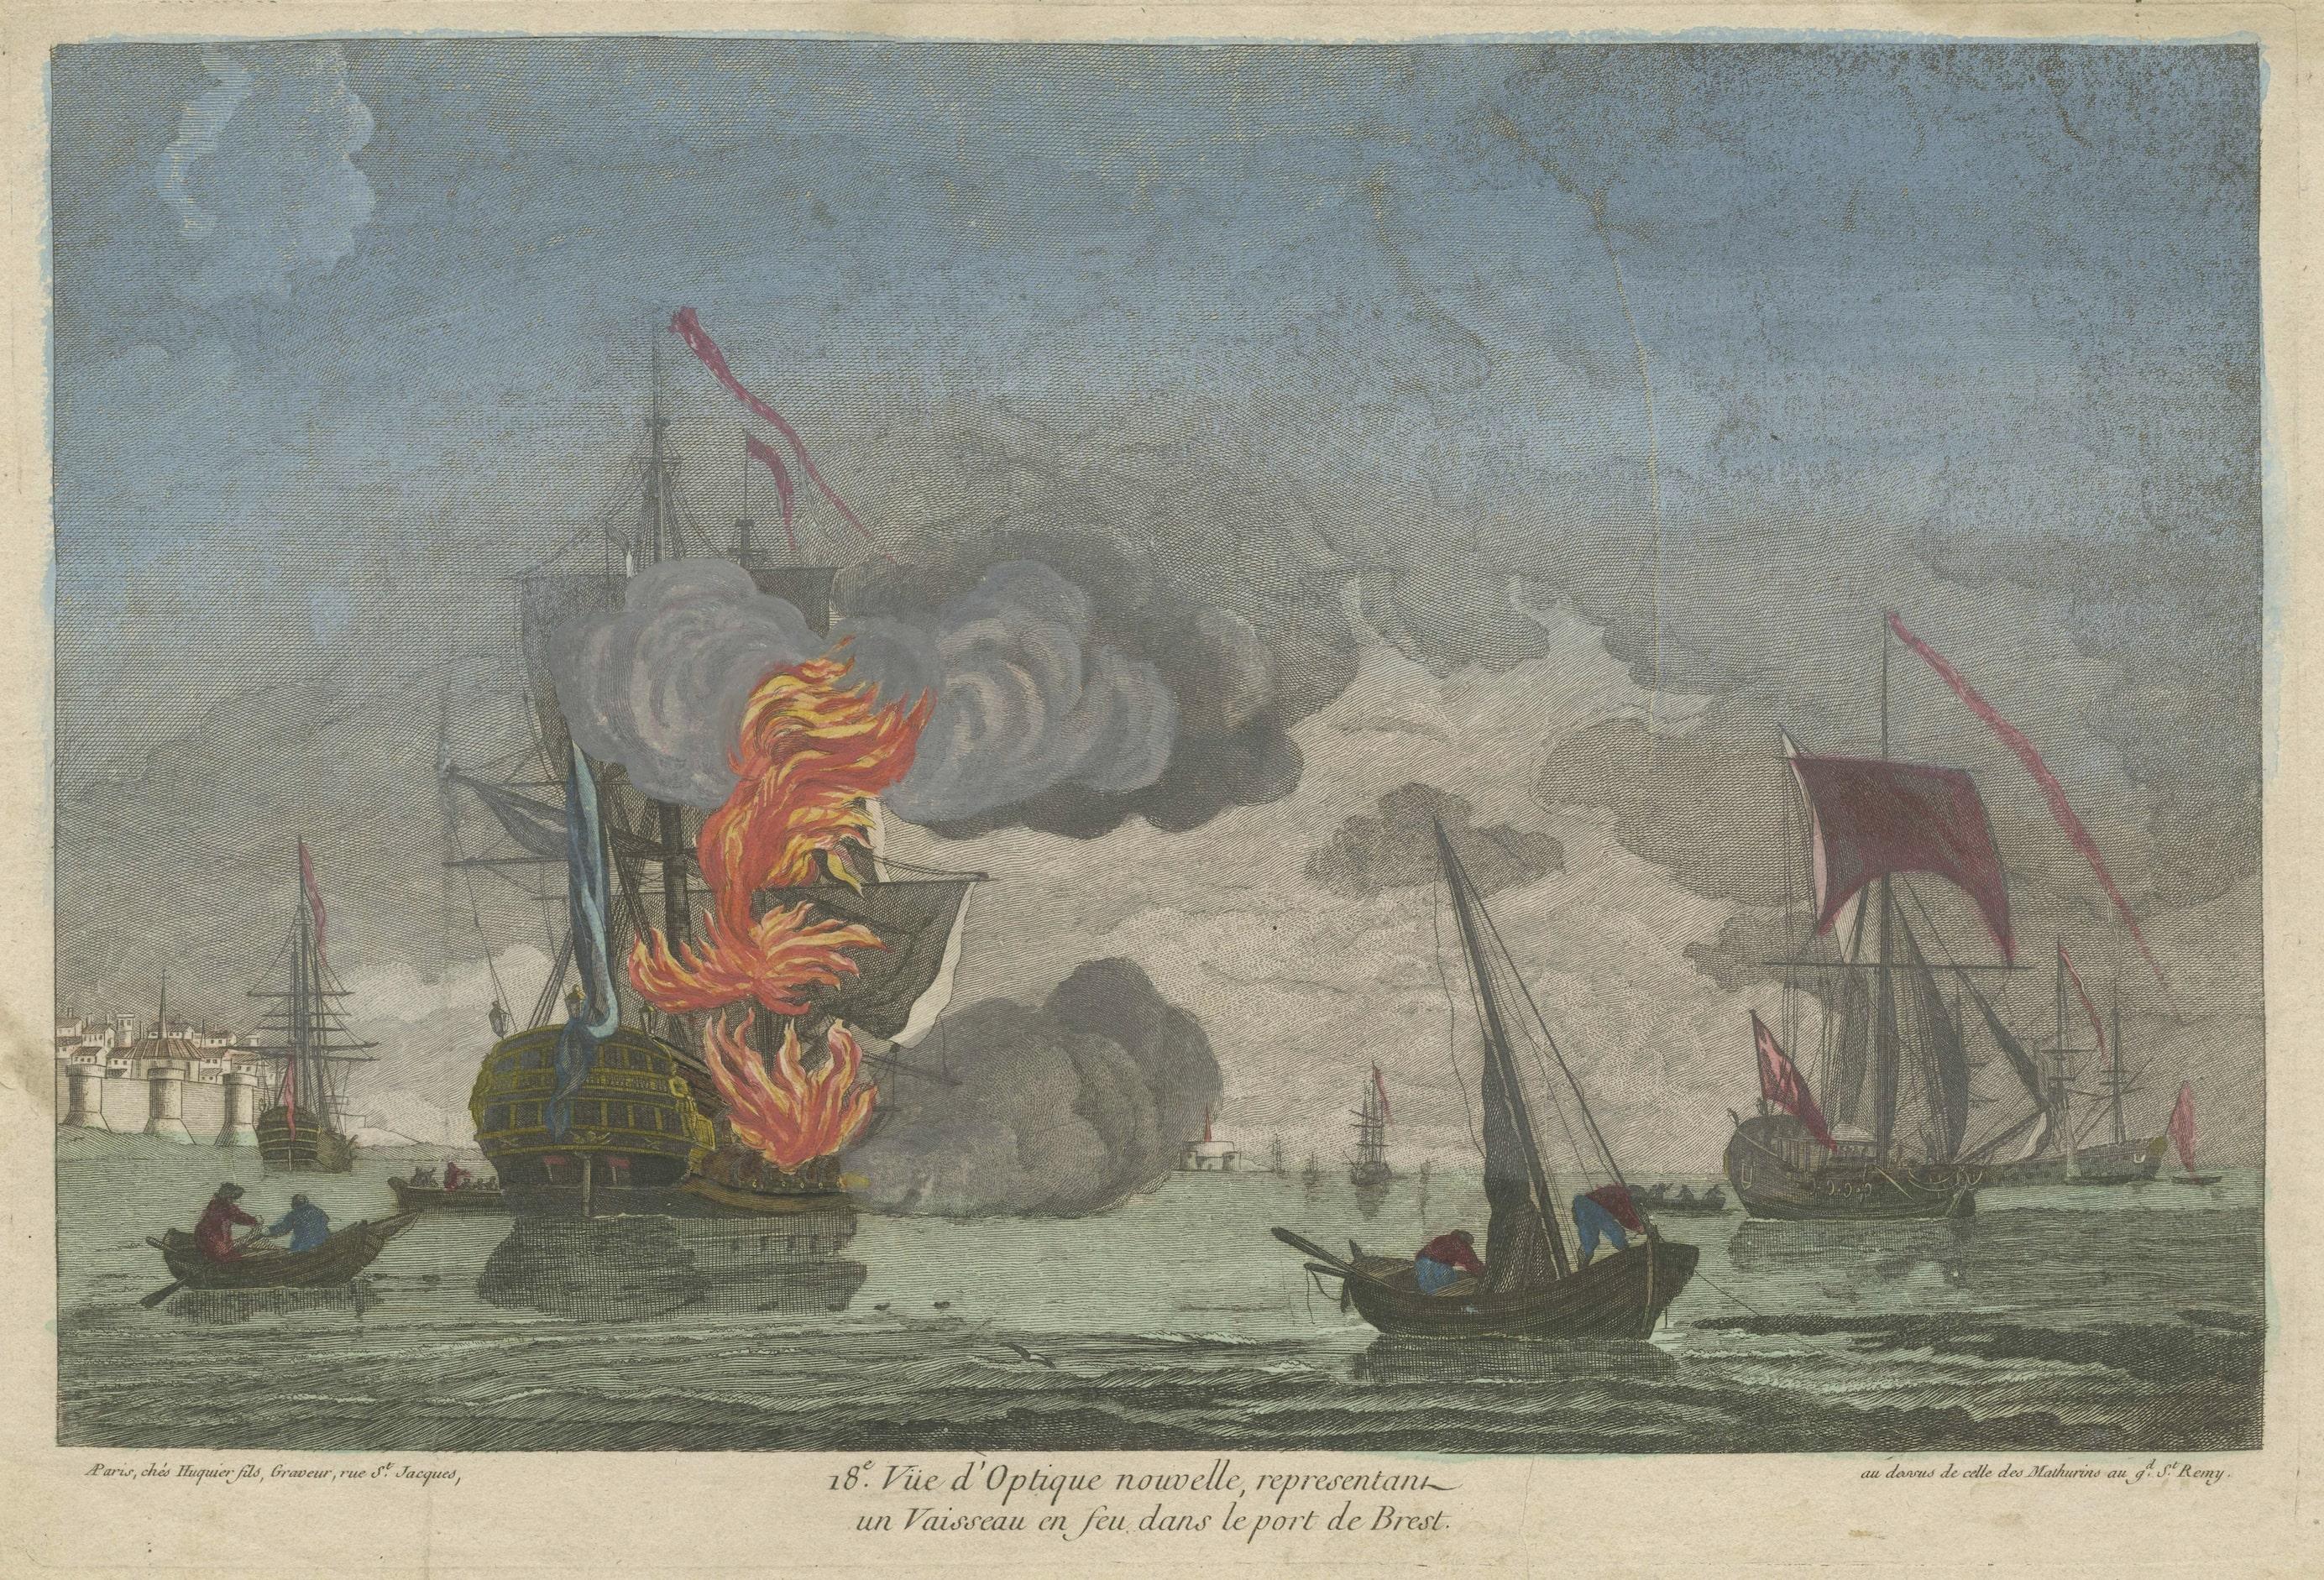 Gravure ancienne intitulée 'Vue d'Optique, nouvelle, representant un Vaisseau en feu dans le port de Brest'. Épreuve optique d'un navire en feu dans le port de Brest, France. Il s'agit d'un tirage optique, également appelé 